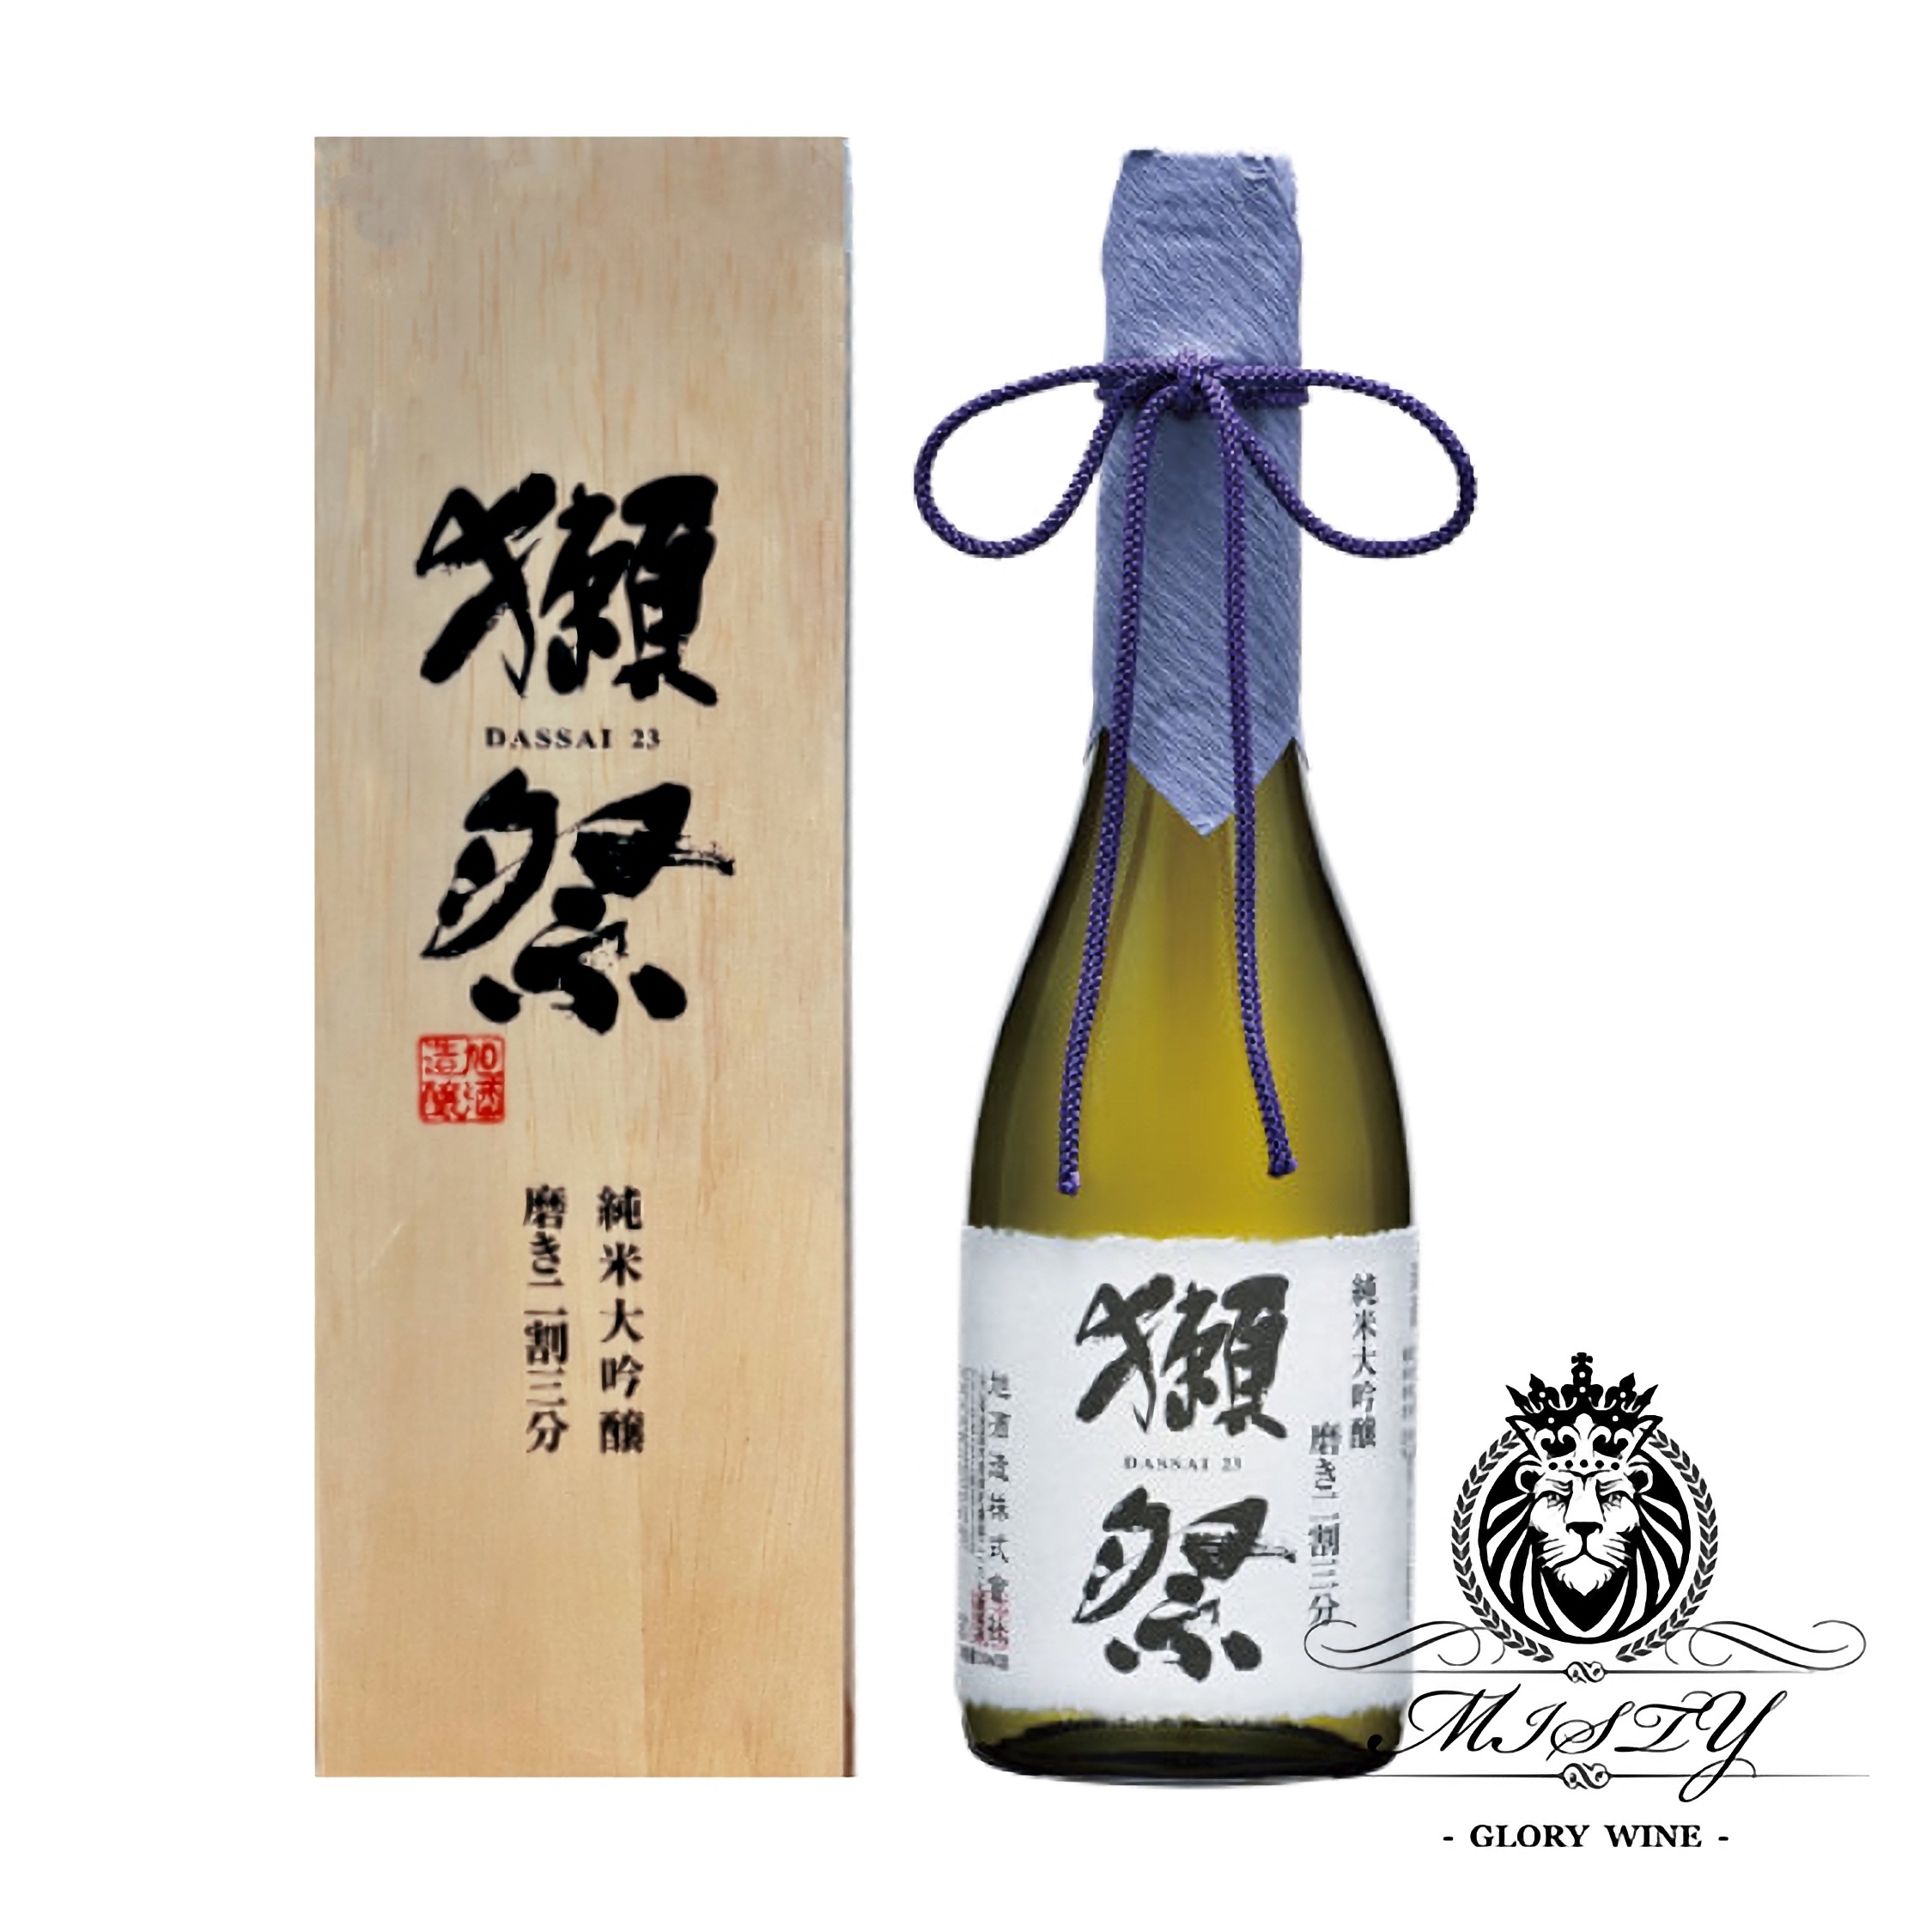 獺祭二割三分純米大吟清酒DASSAI 23 木盒版